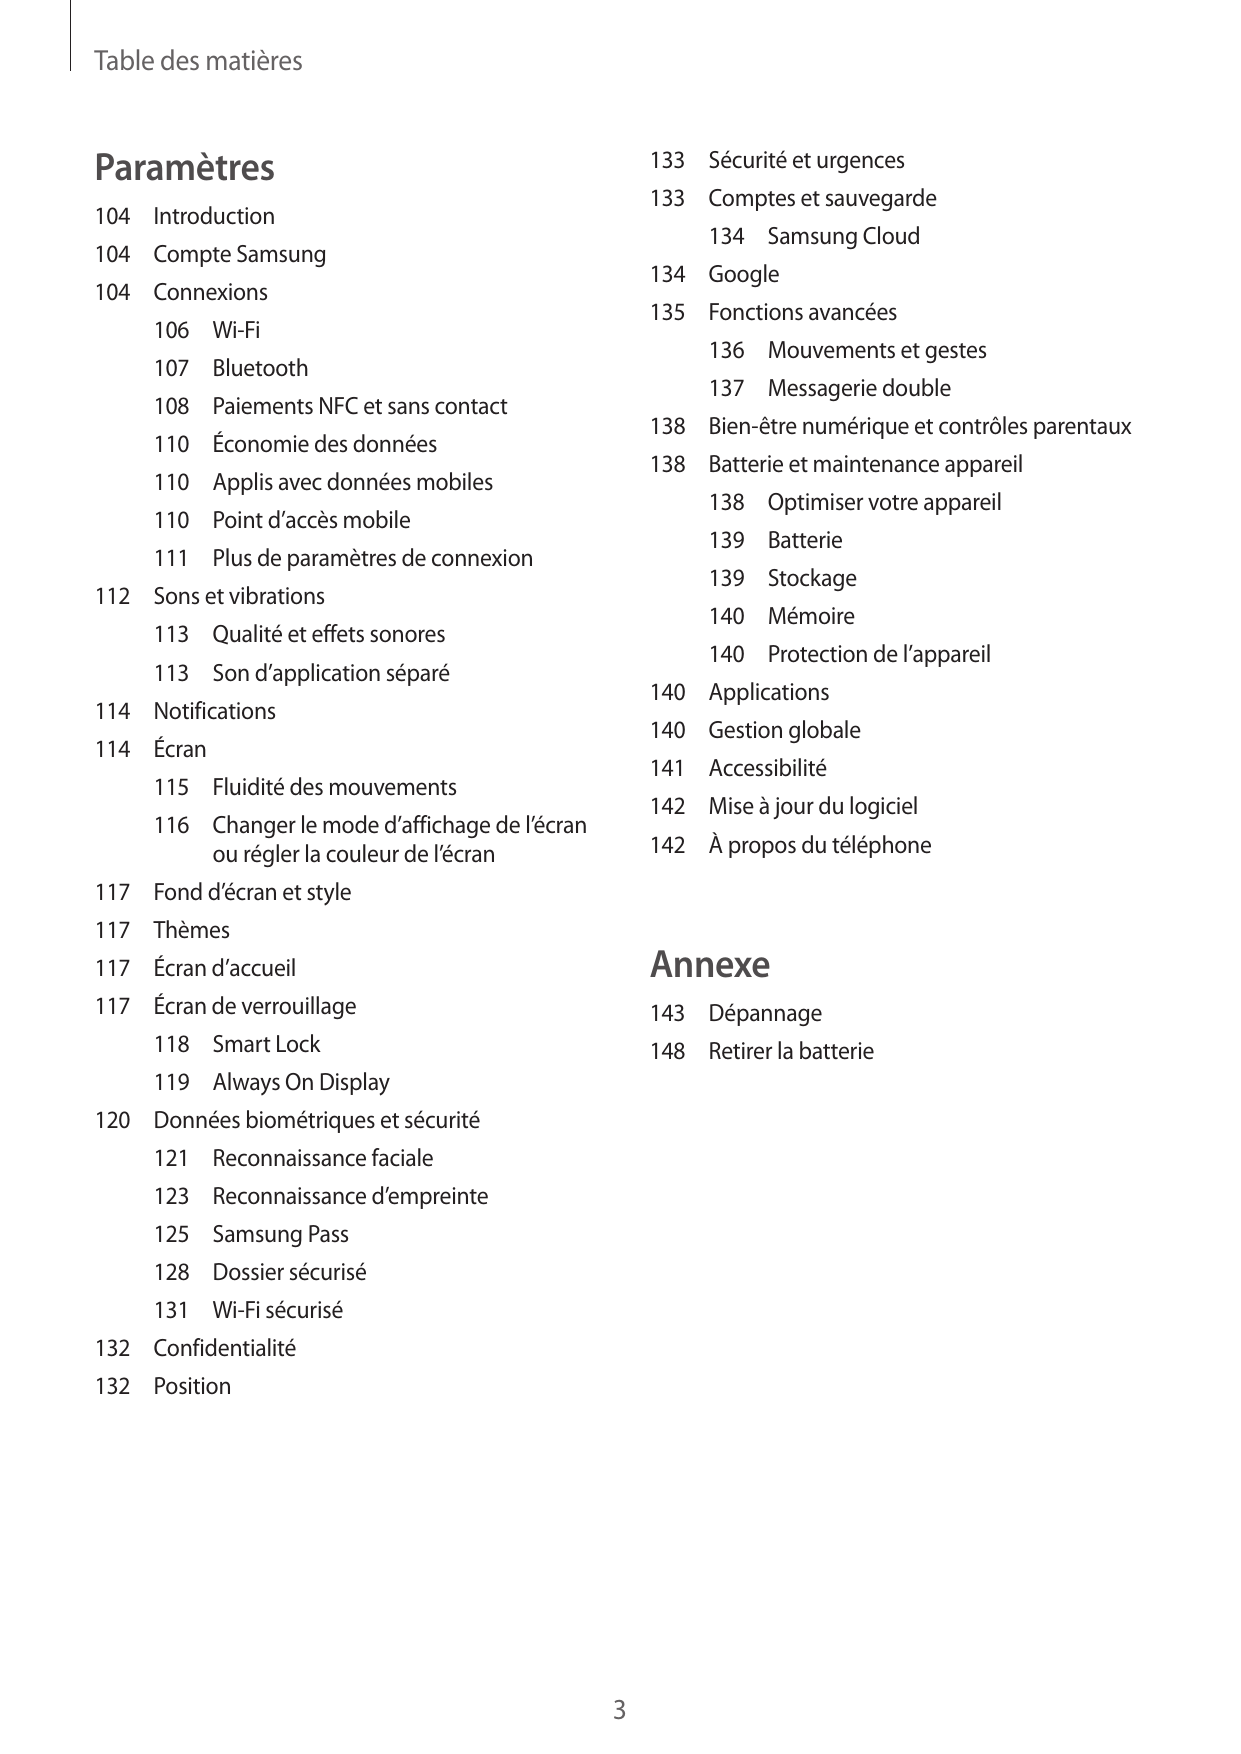 Table des matièresParamètres133 Sécurité et urgences133 Comptes et sauvegarde104Introduction134 Samsung Cloud104 Compte Samsung1